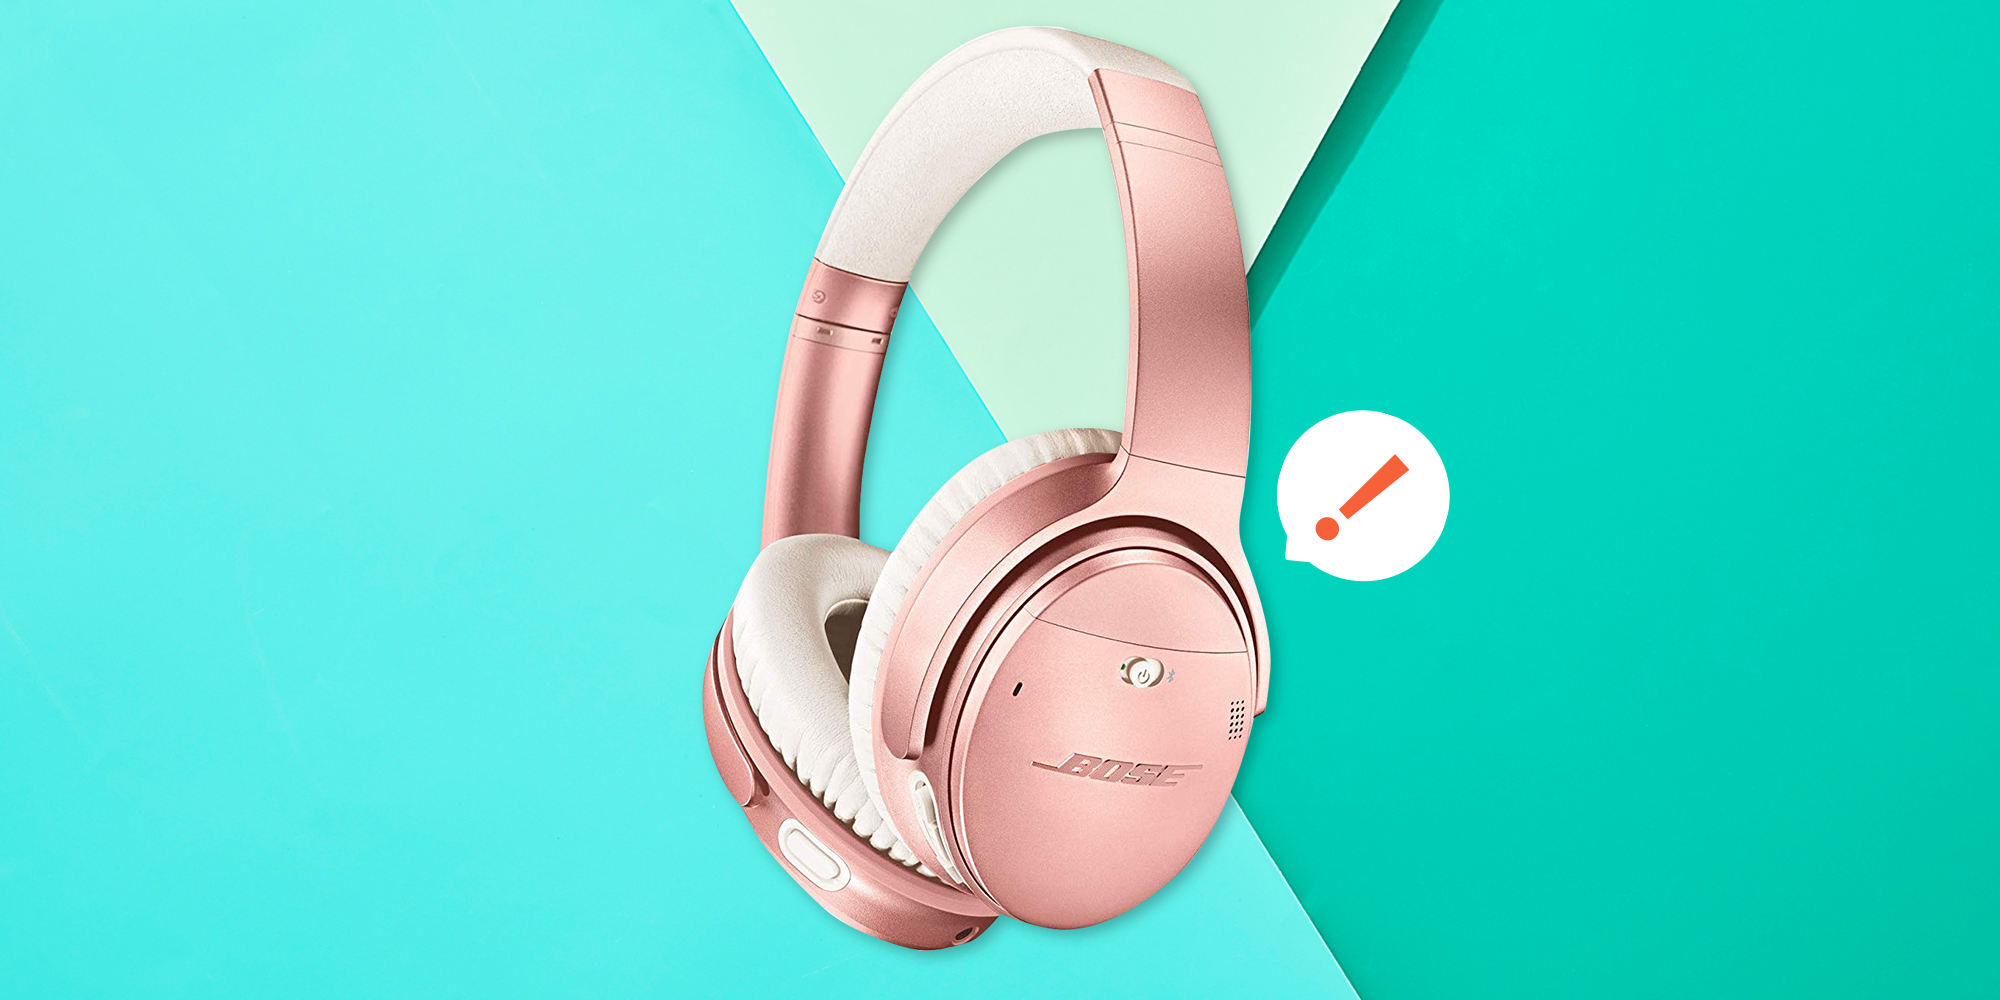 købmand sikring dårligt Bose's Noise-Cancelling Headphones On Sale At Lowest Price Ever